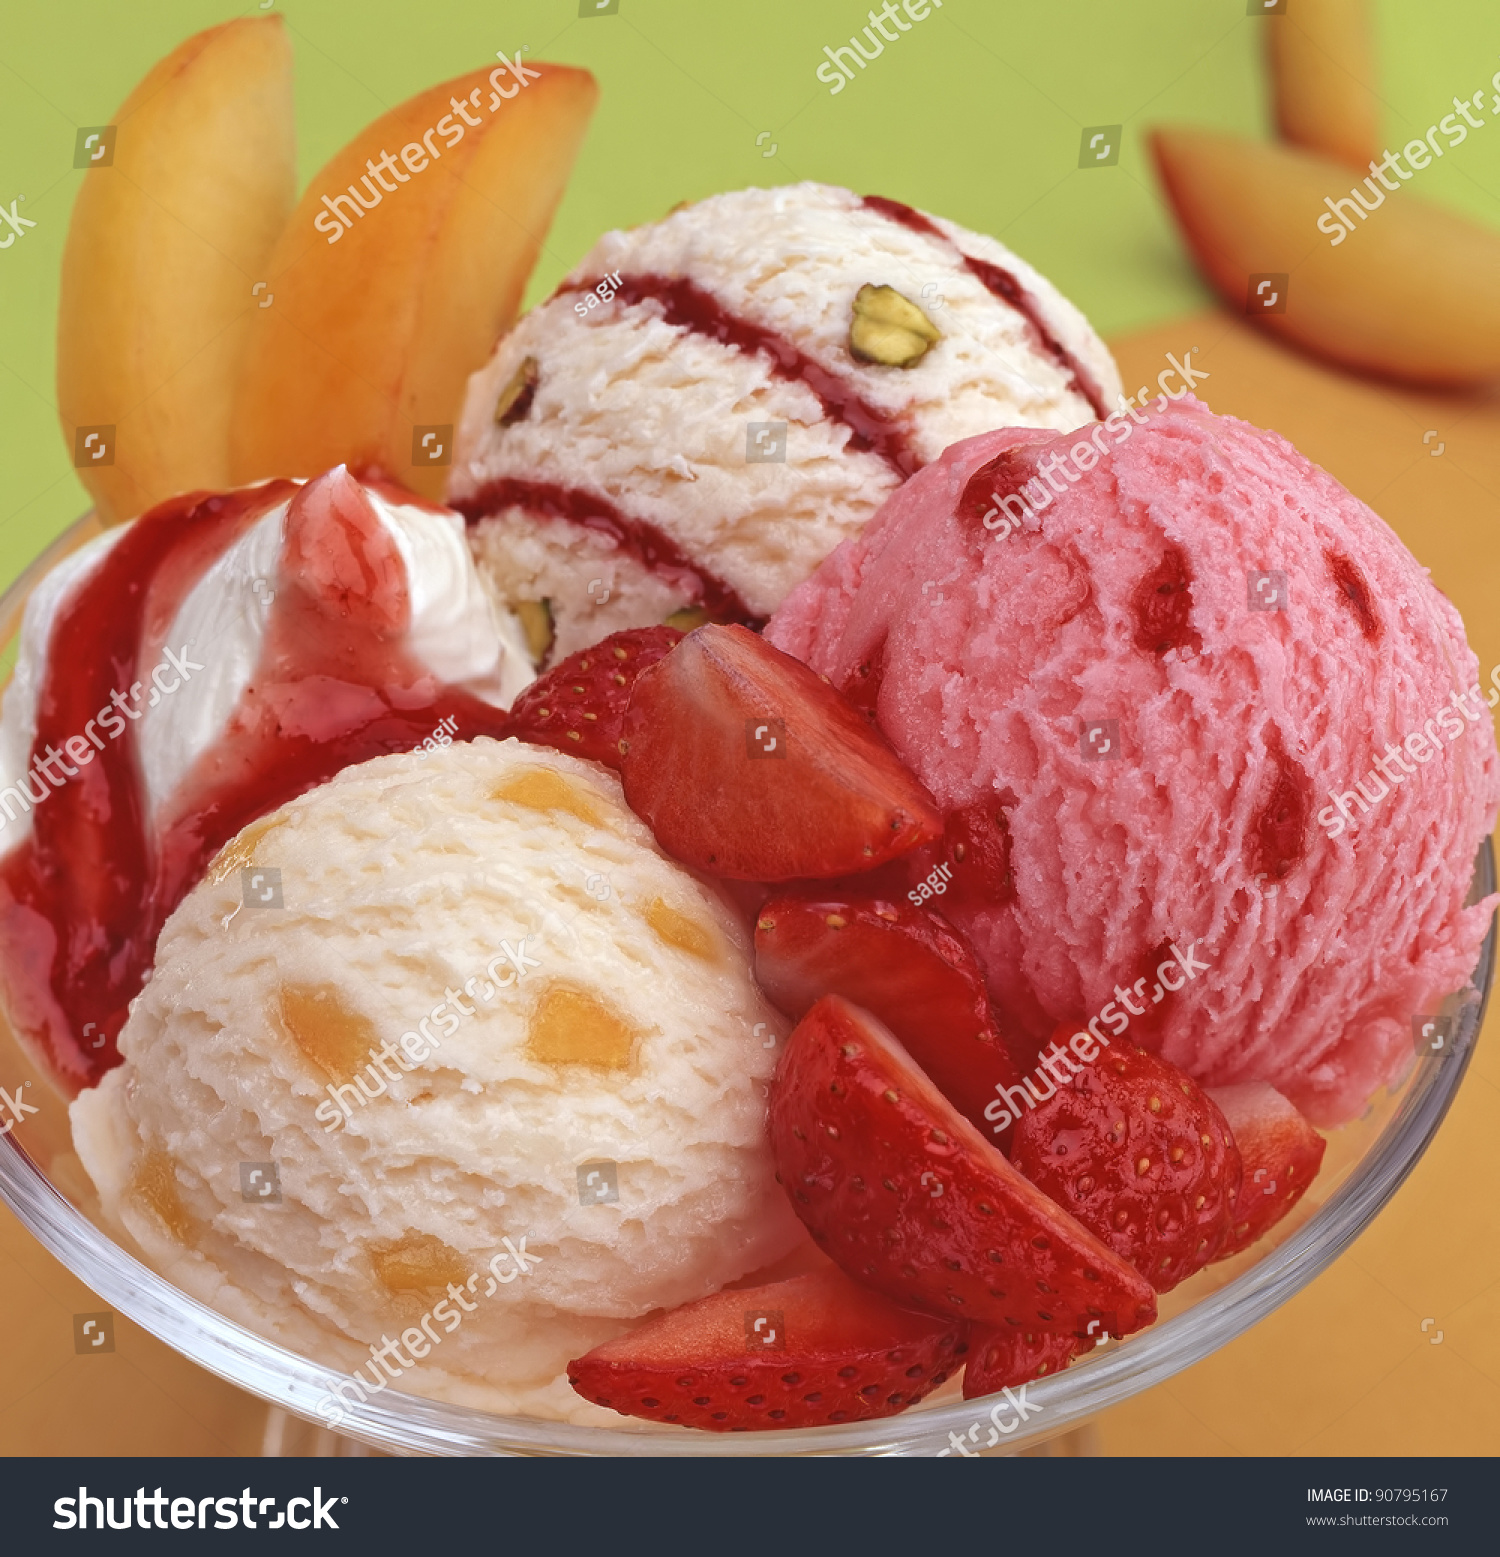 Фруктовое мороженое из фруктов. Мороженое. Мороженое с фруктами. Десерт мороженое с фруктами. Мороженое с наполнителем.